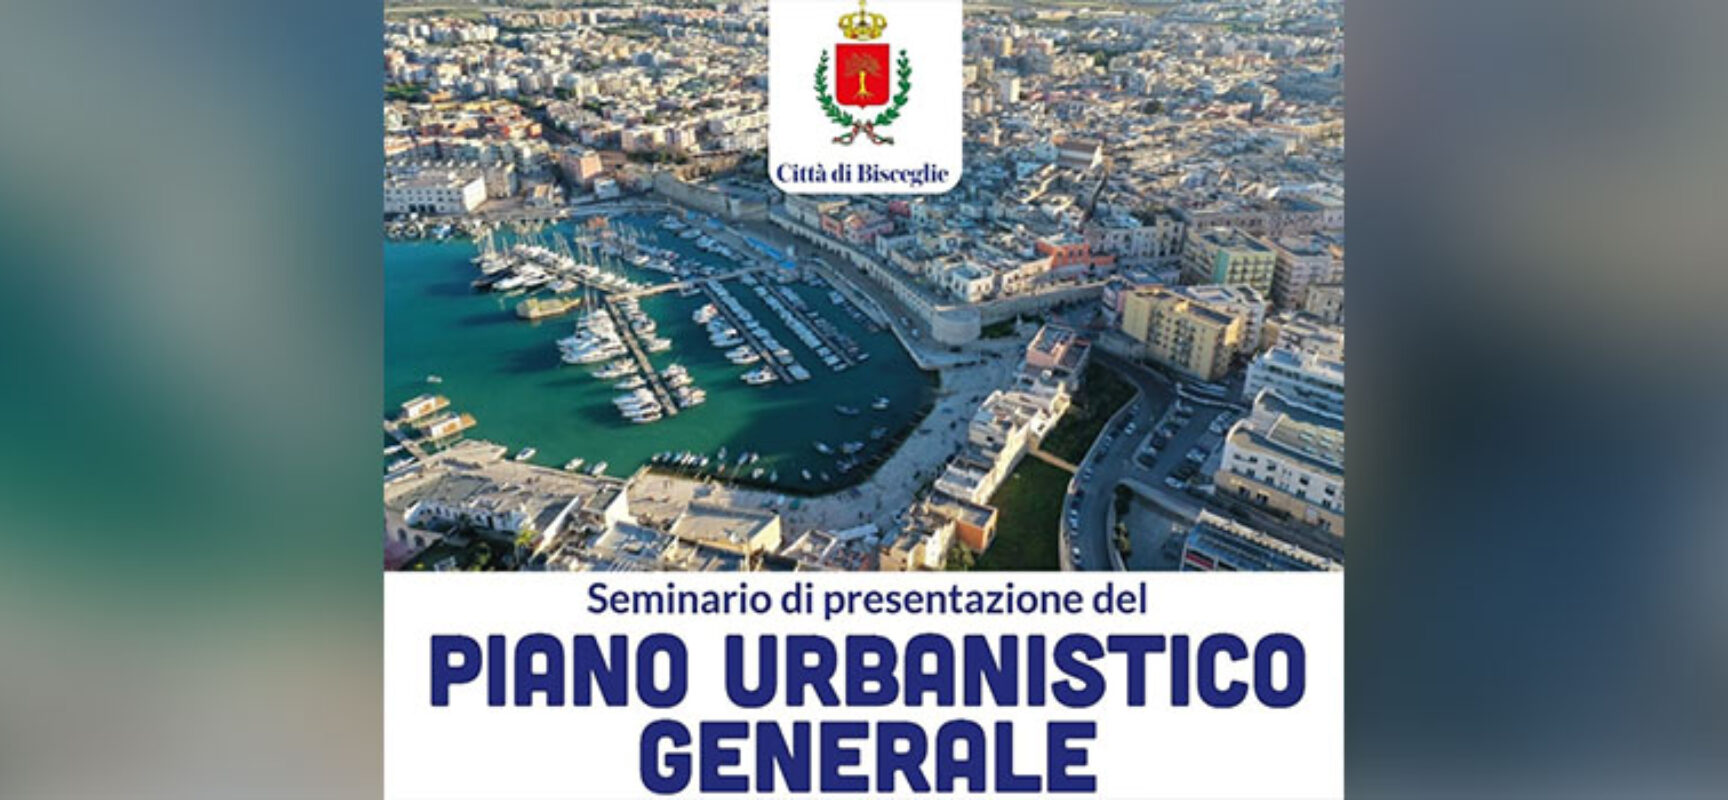 Bisceglie, oggi seminario di presentazione alla Città del Piano Urbanistico Generale